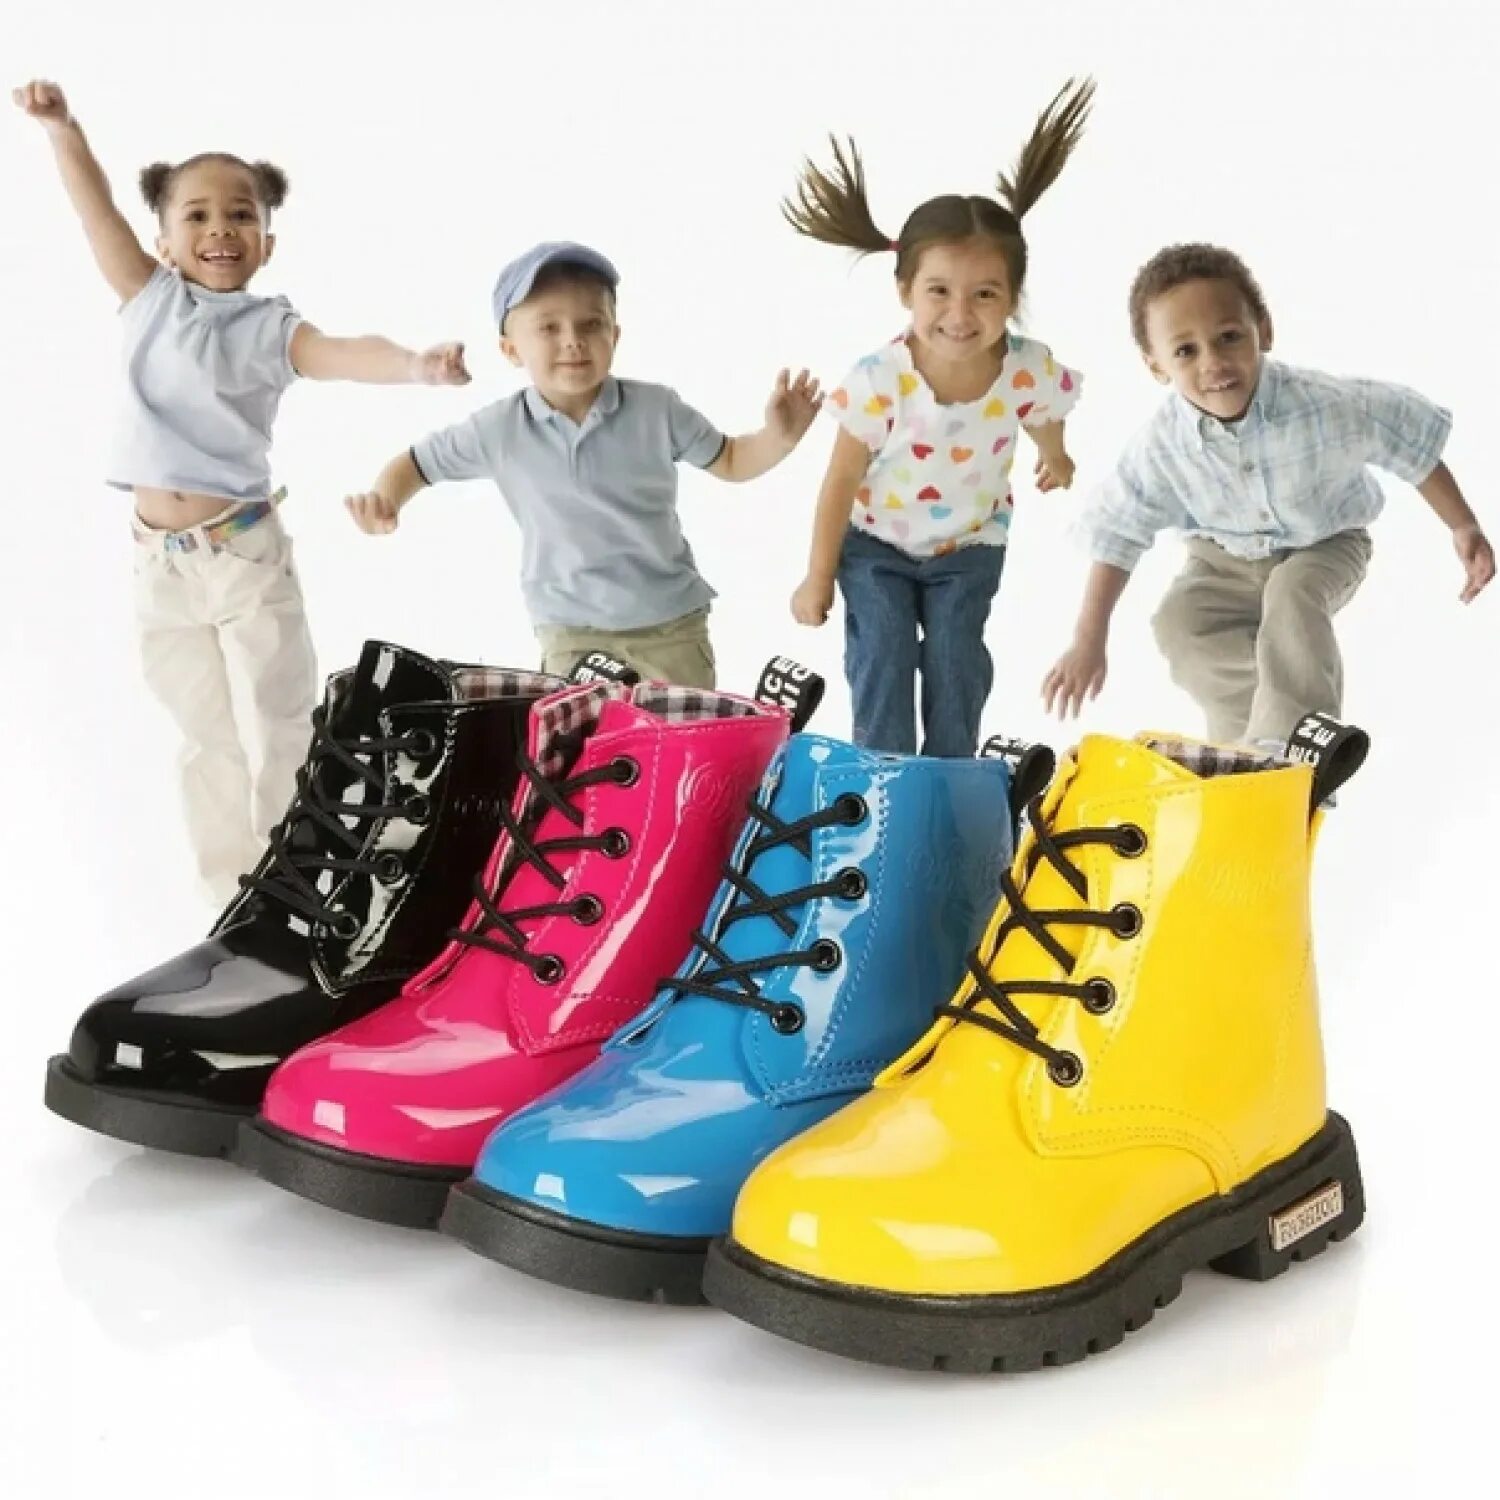 Детская обувь. Детская обувь реклама. Ботинки для детей. Современная детская обувь.